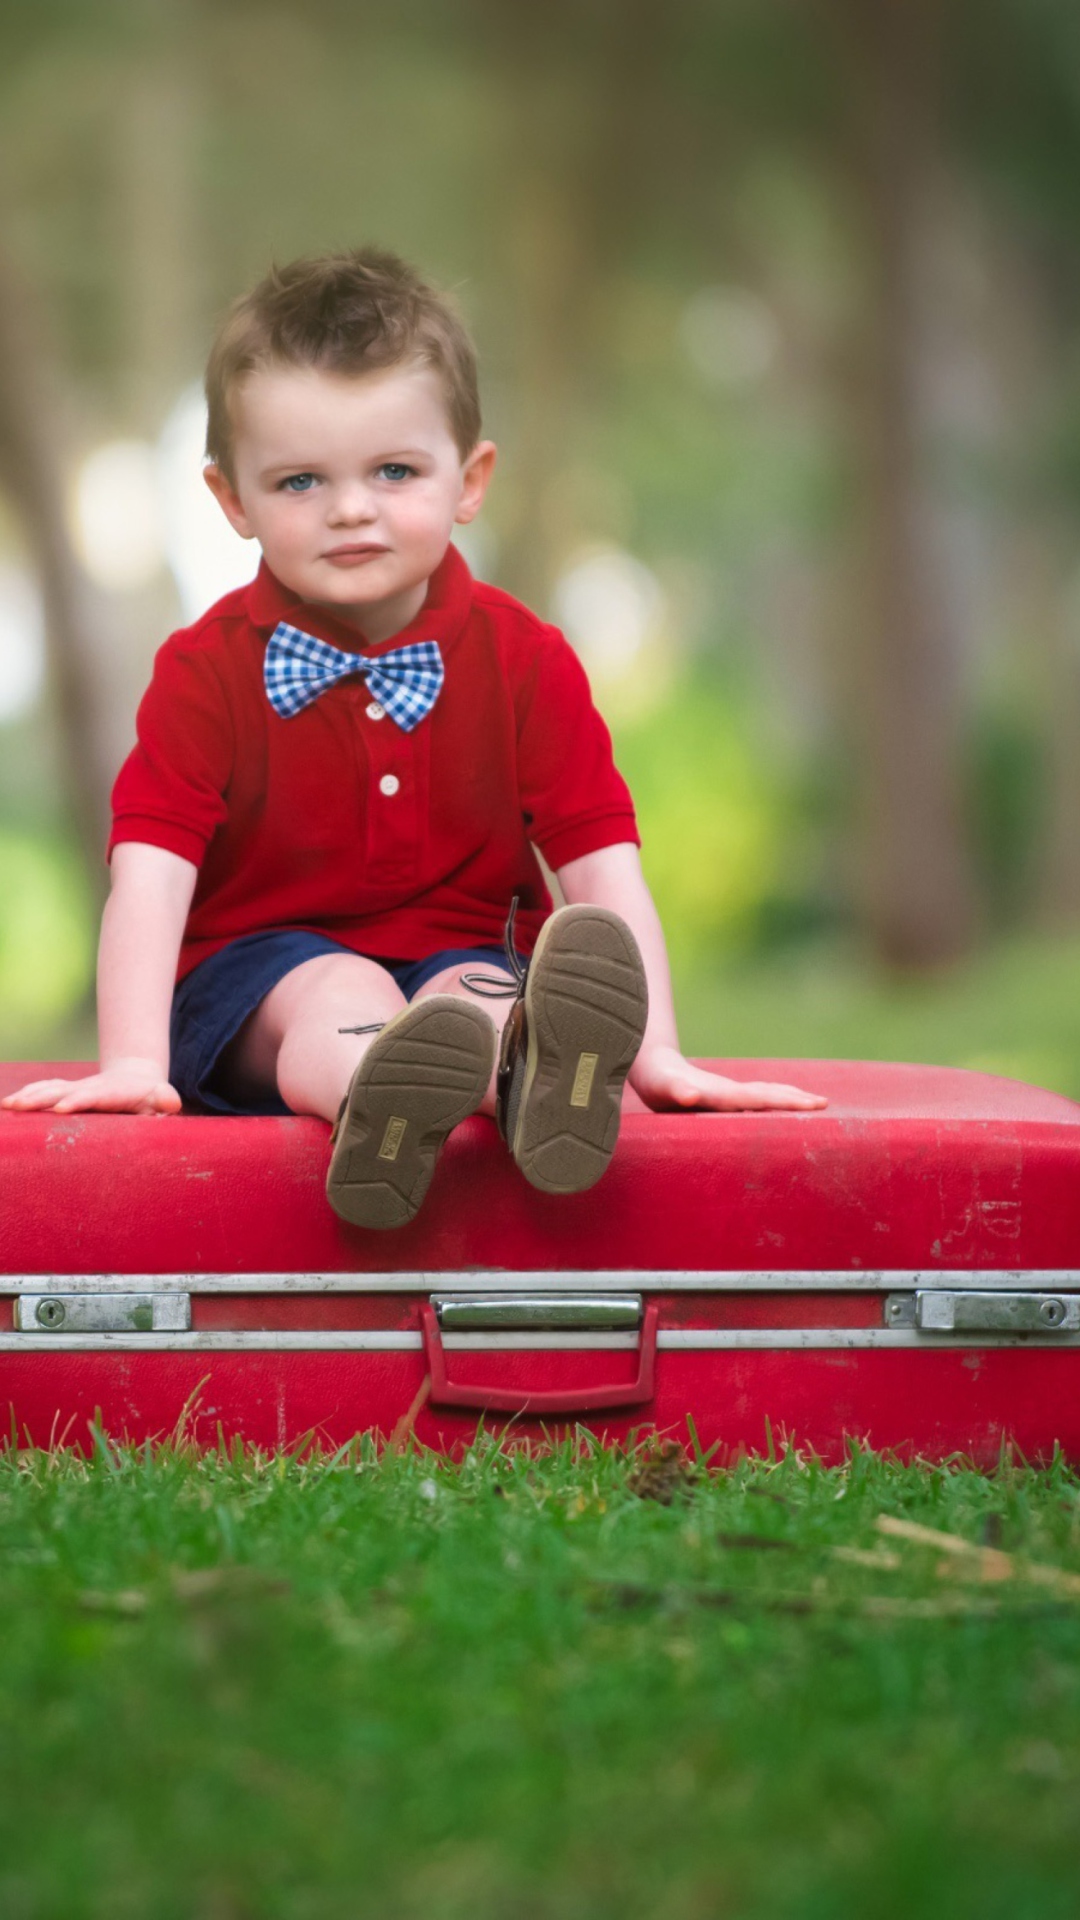 Das Cute Boy Sitting On Red Luggage Wallpaper 1080x1920